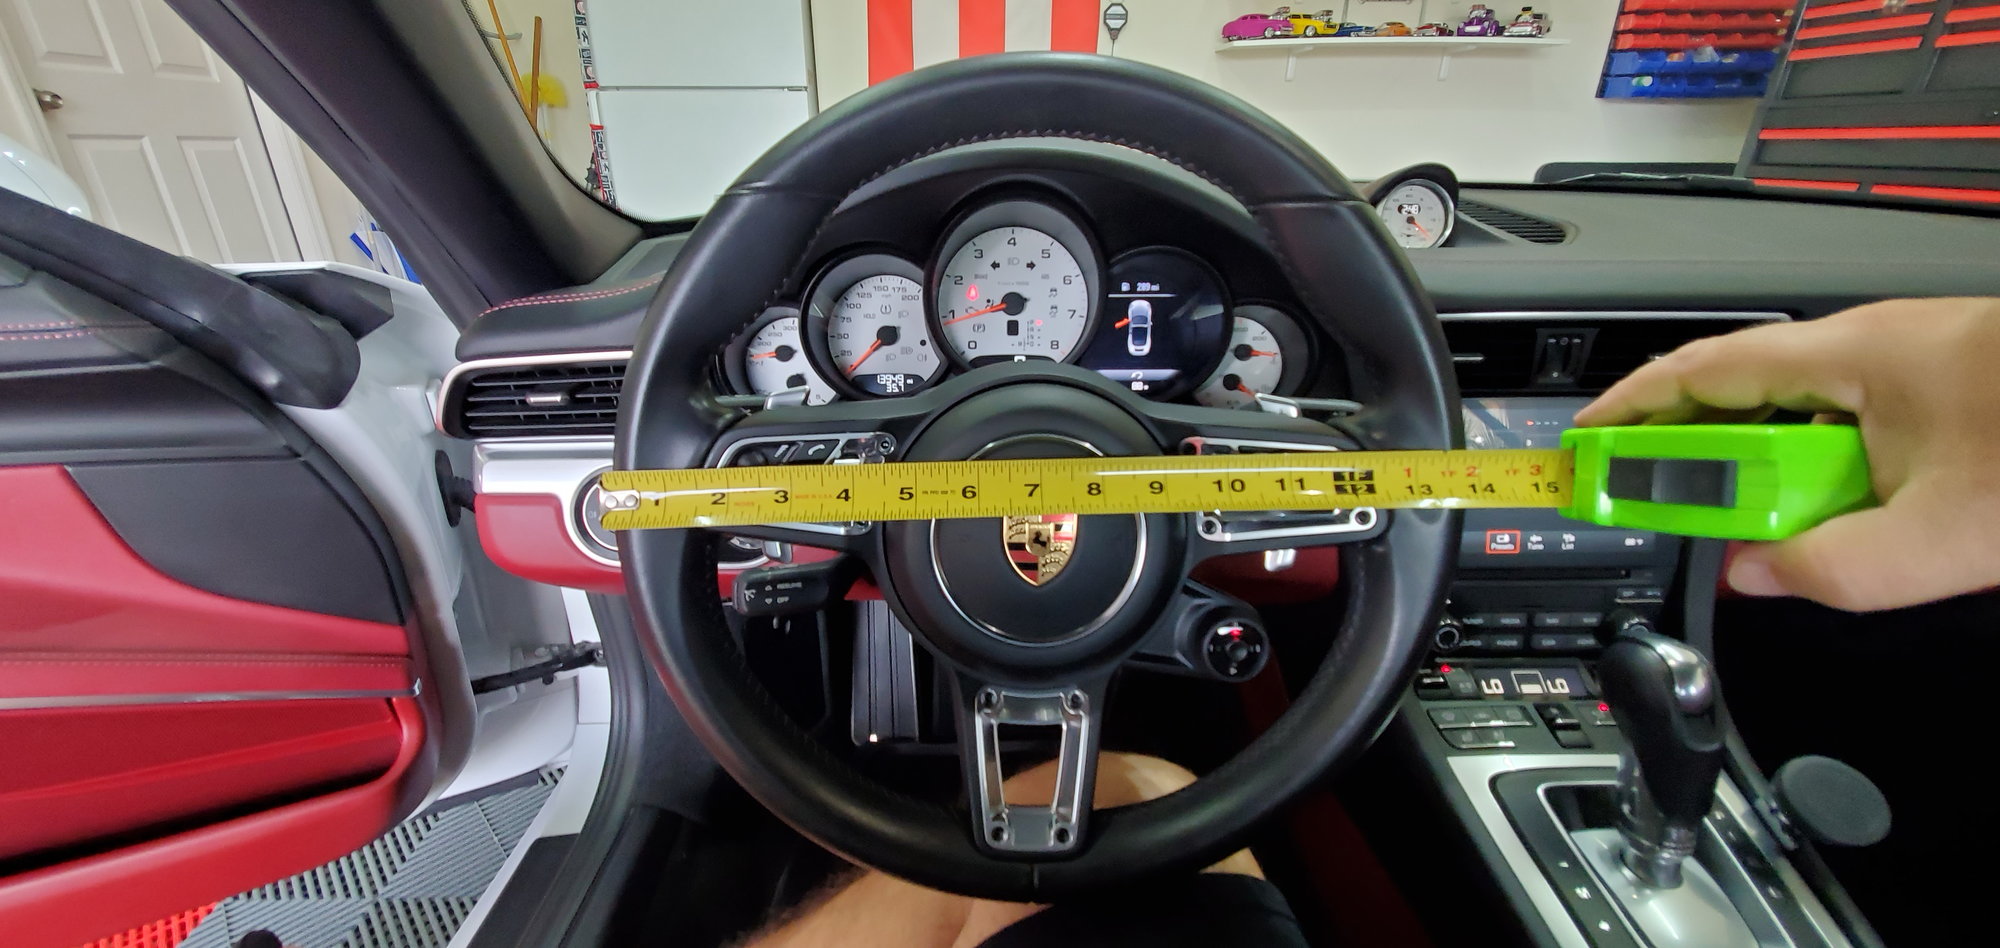 Steering wheel type and size - Rennlist - Porsche Discussion Forums